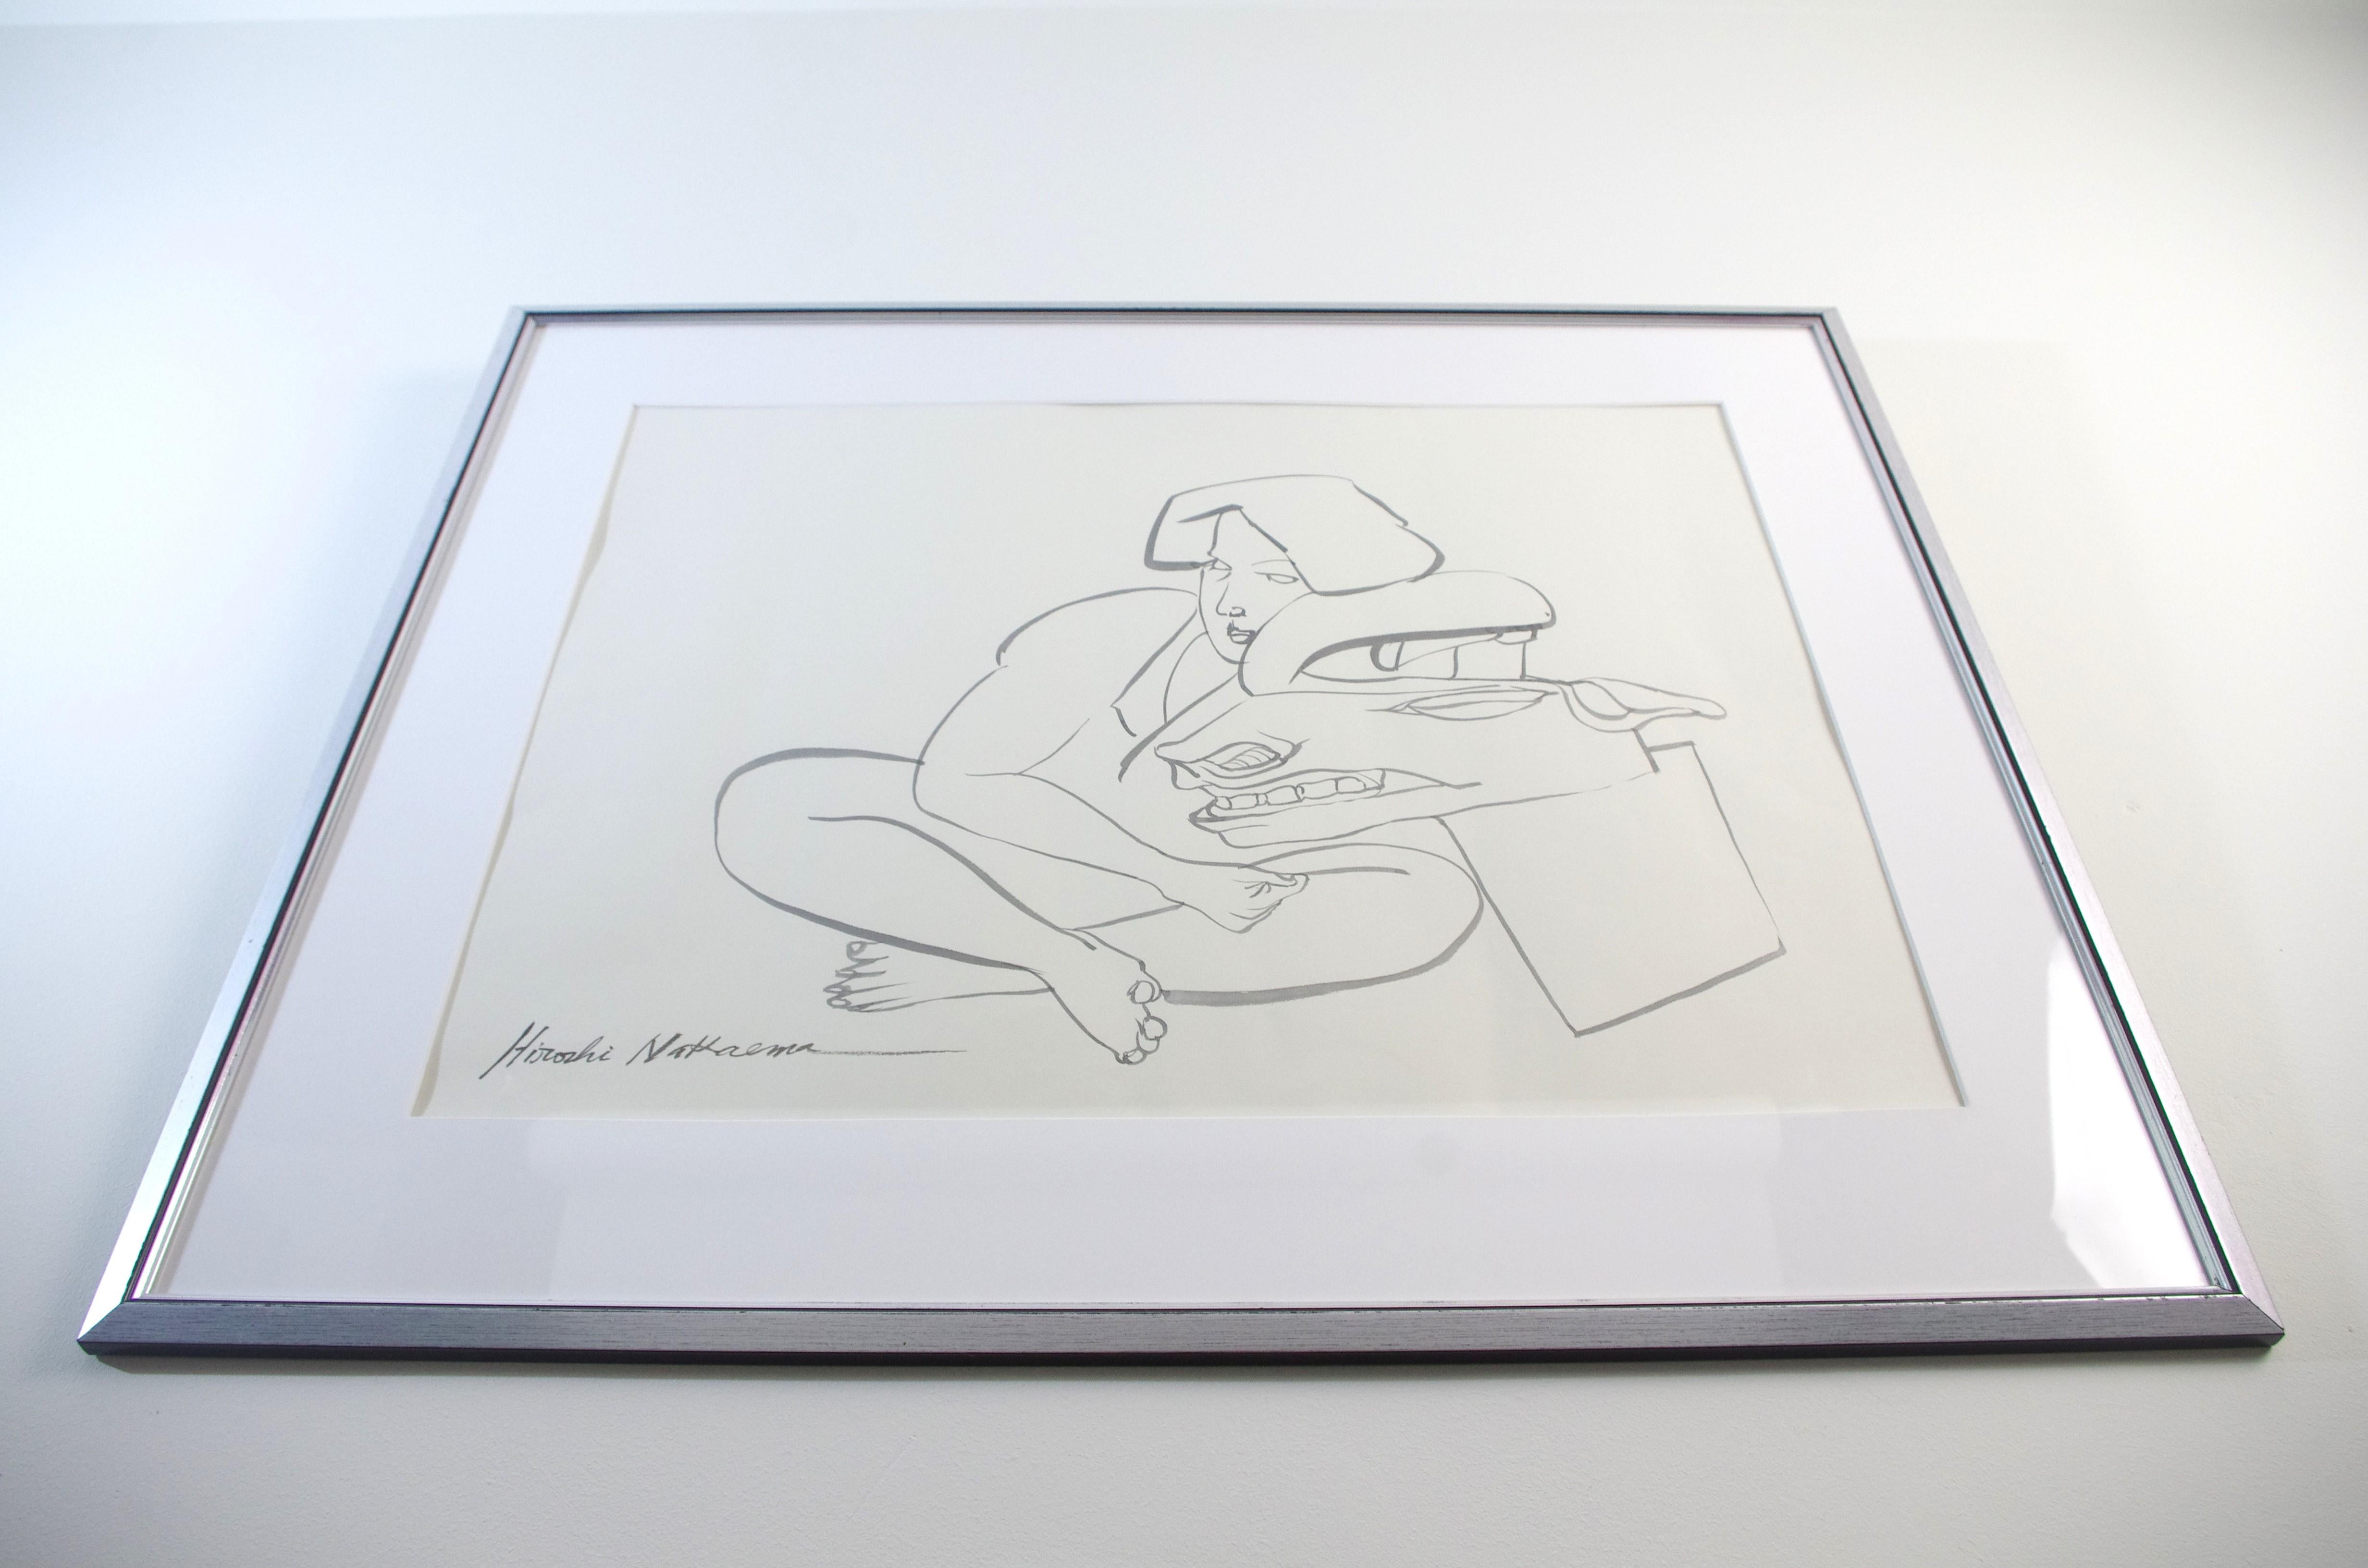 Paper Hiroshi Nakaema - Aquarel Drawing For Sale